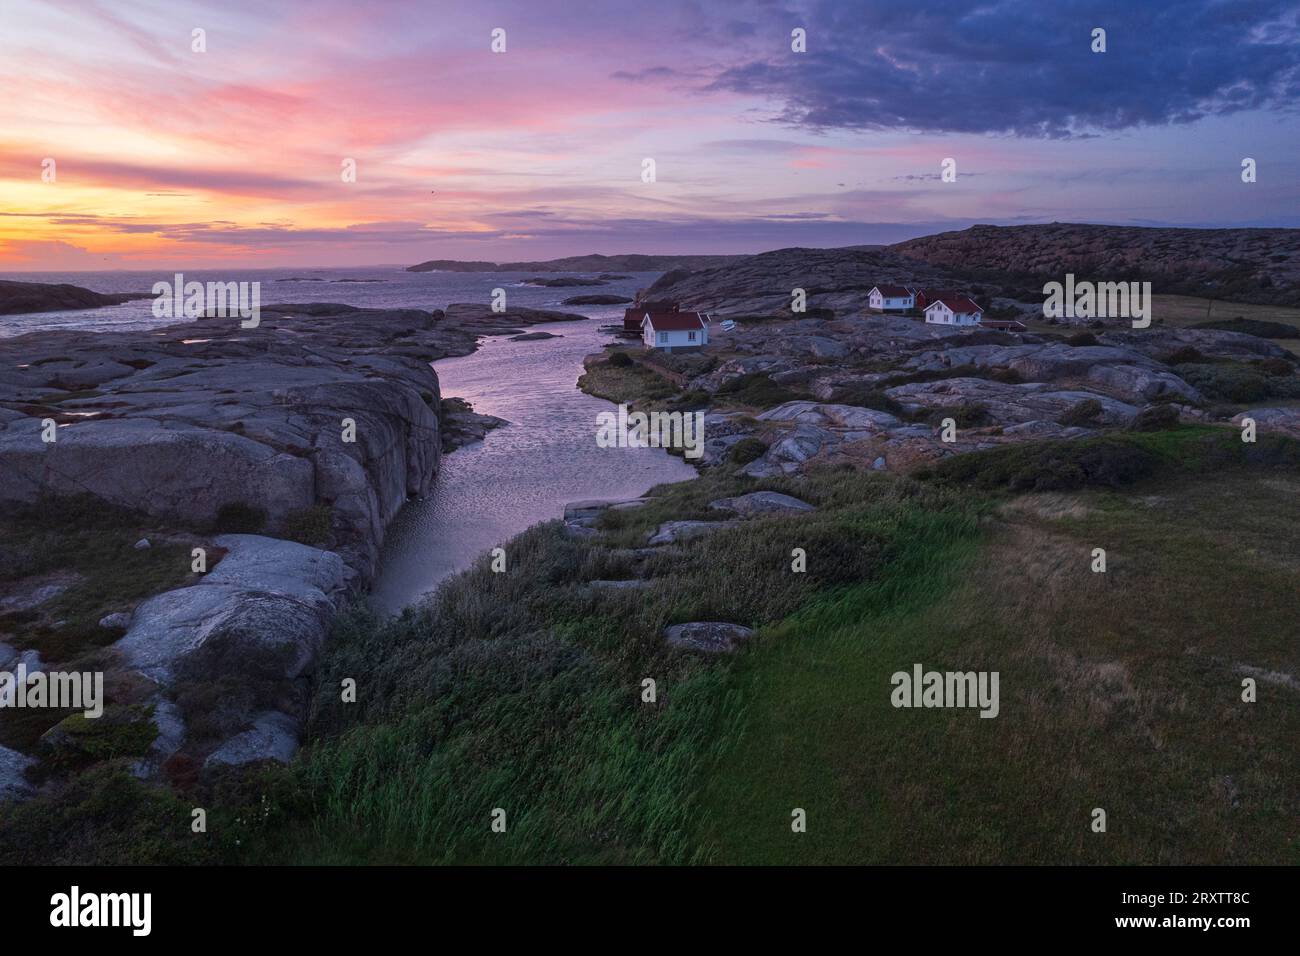 Abenddämmerung auf der Insel Ramsvik mit isolierten Häusern auf Granitfelsen mit Blick auf das Meer, Bohuslan, Vastra Gotaland, Westschweden, Schweden, Skandinavien Stockfoto